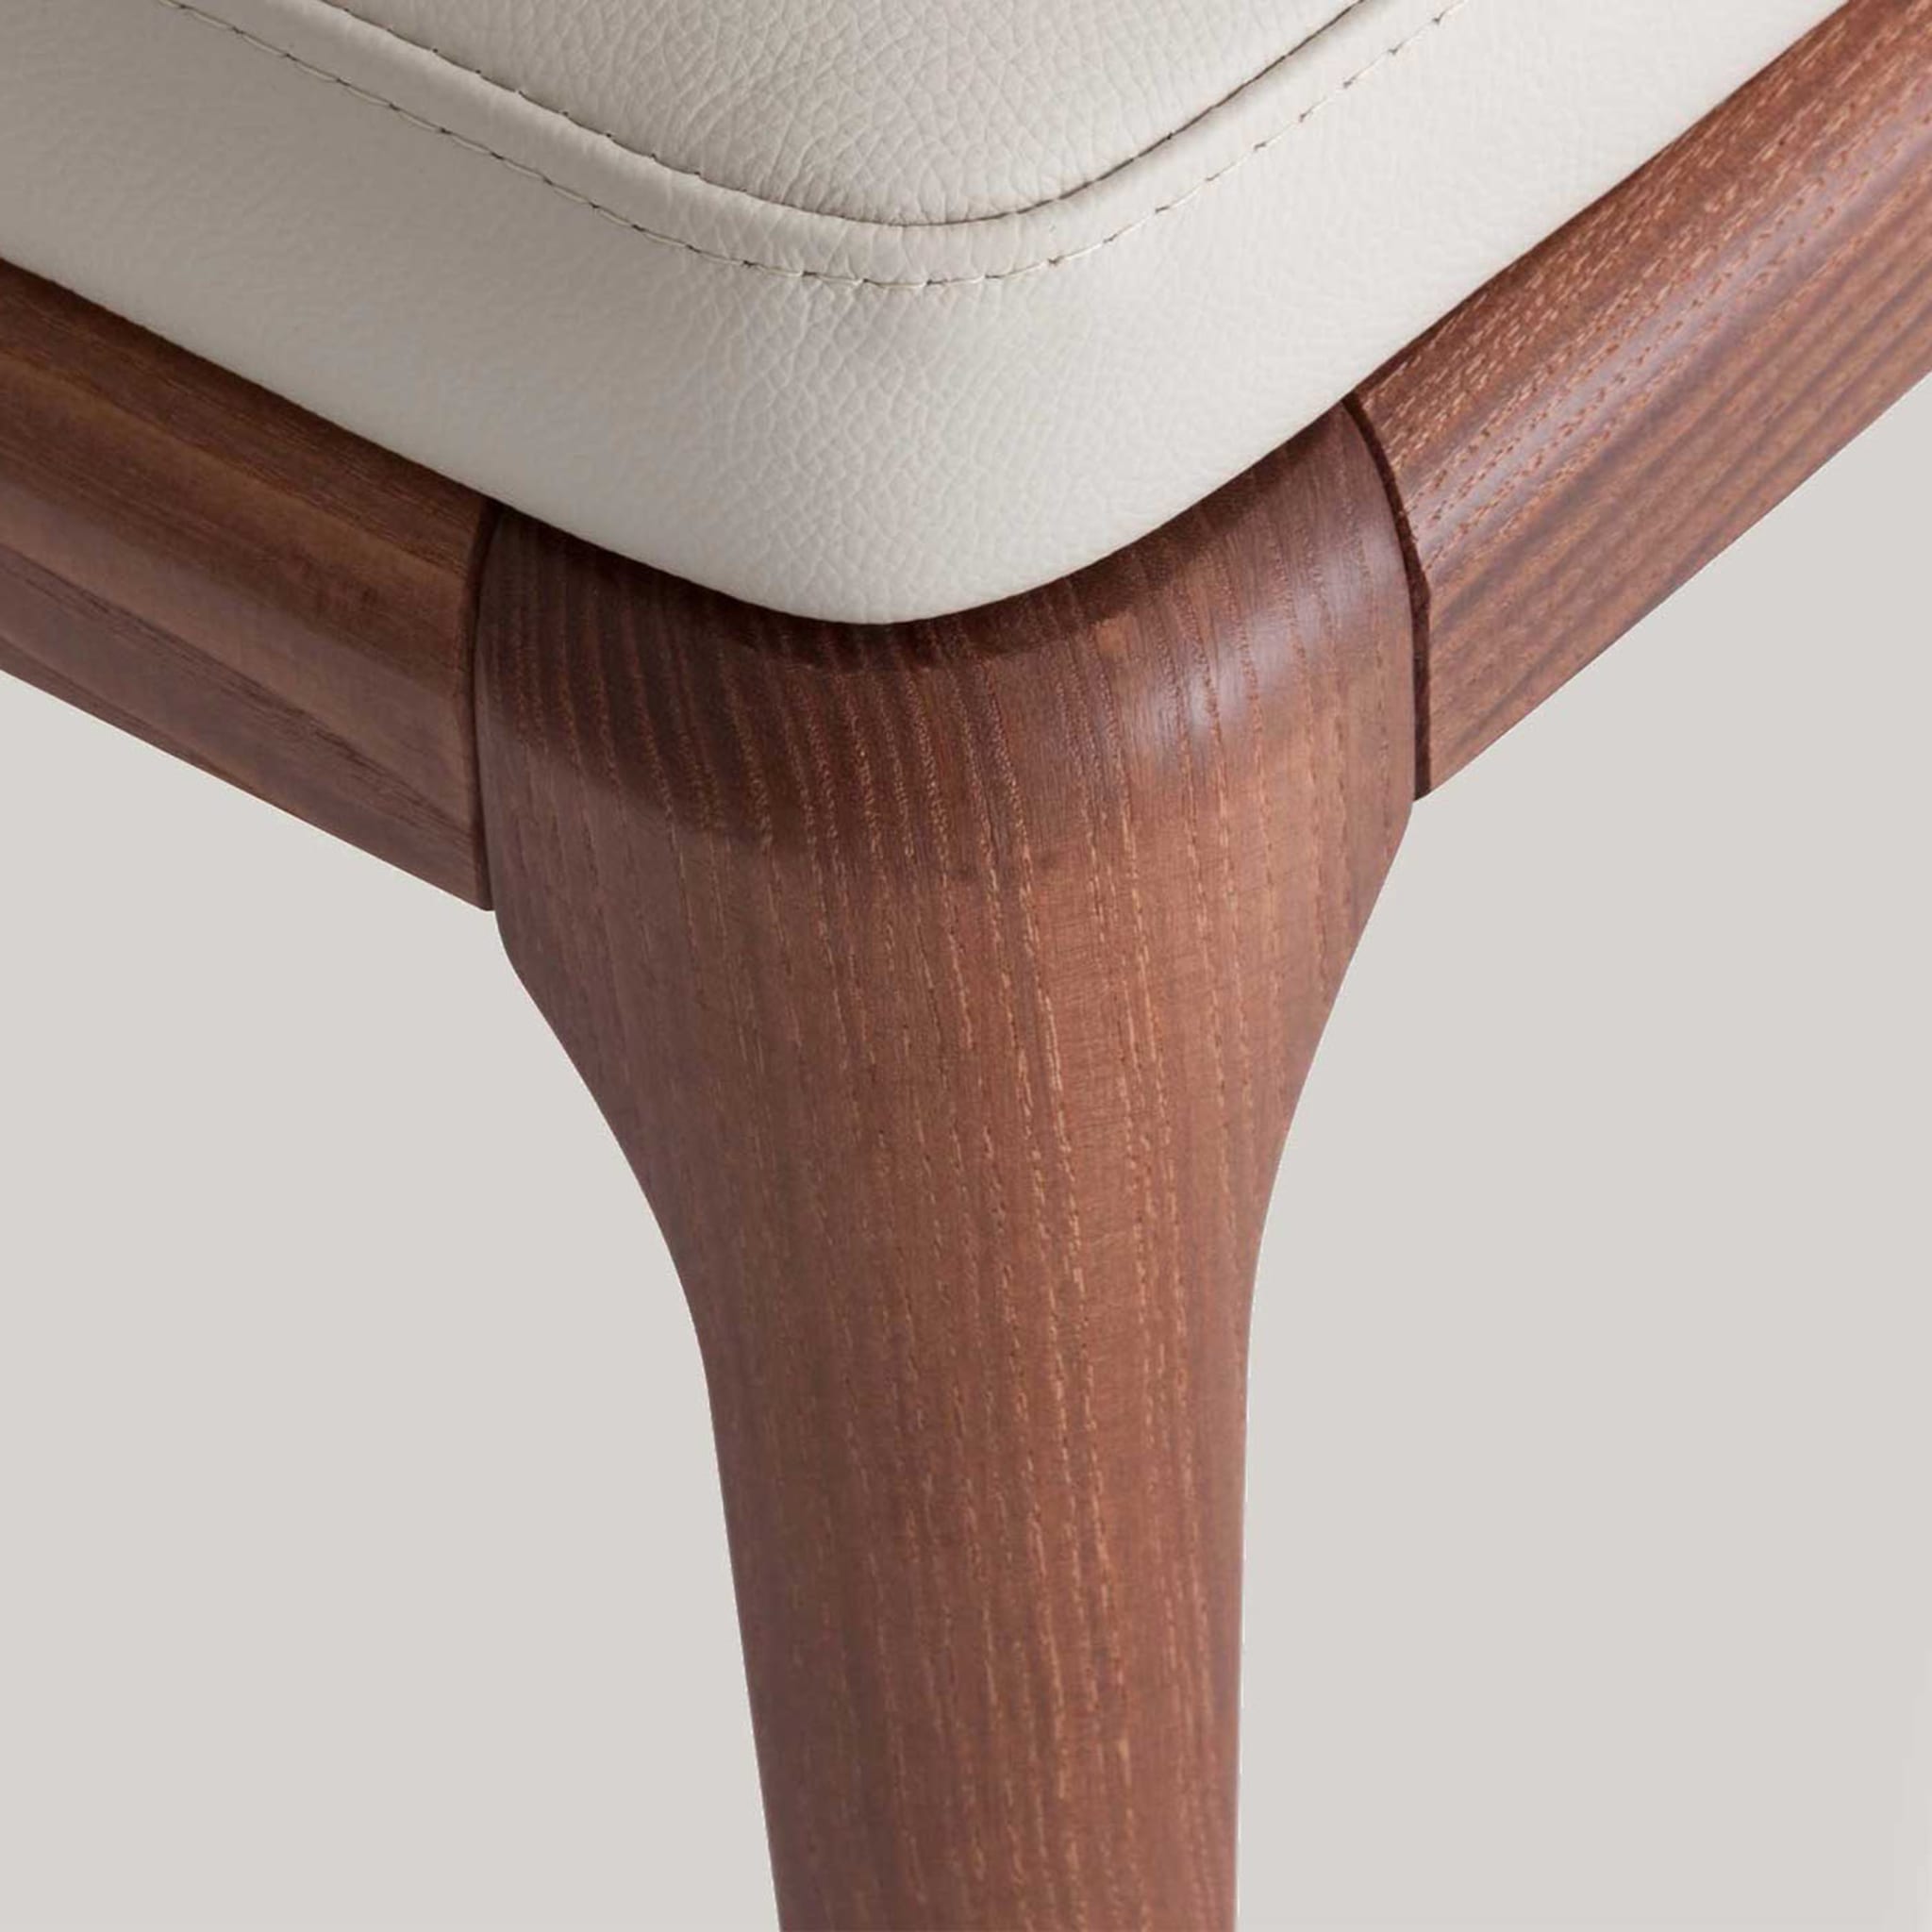 Antigona White Leather Chair - Alternative view 3